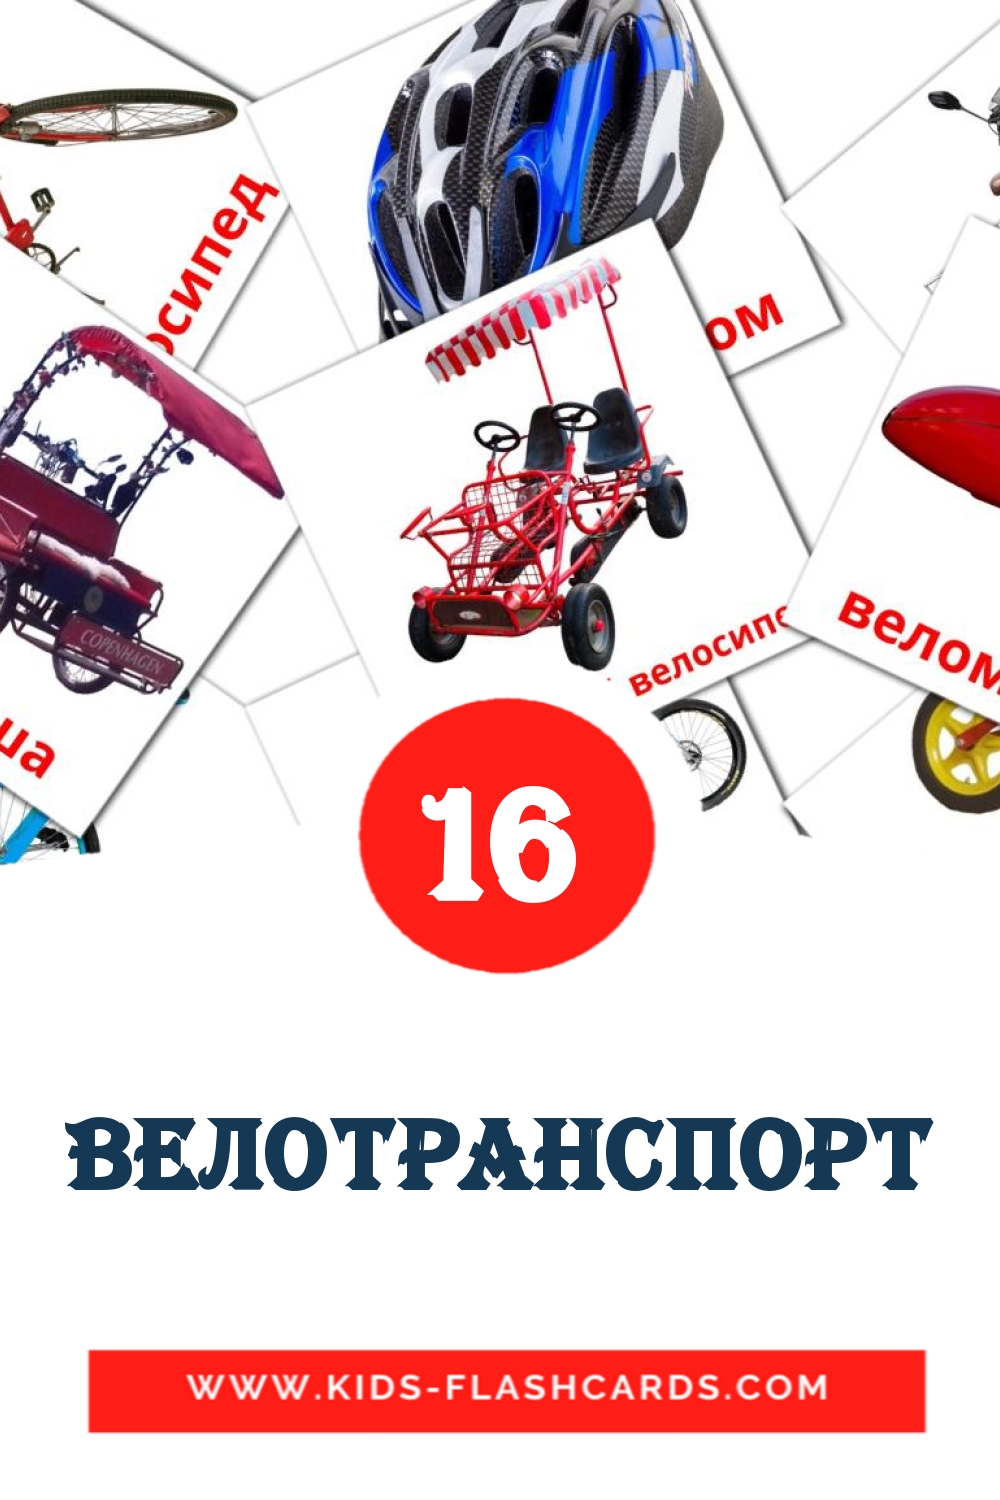 Велотранспорт на украинском для Детского Сада (16 карточек)